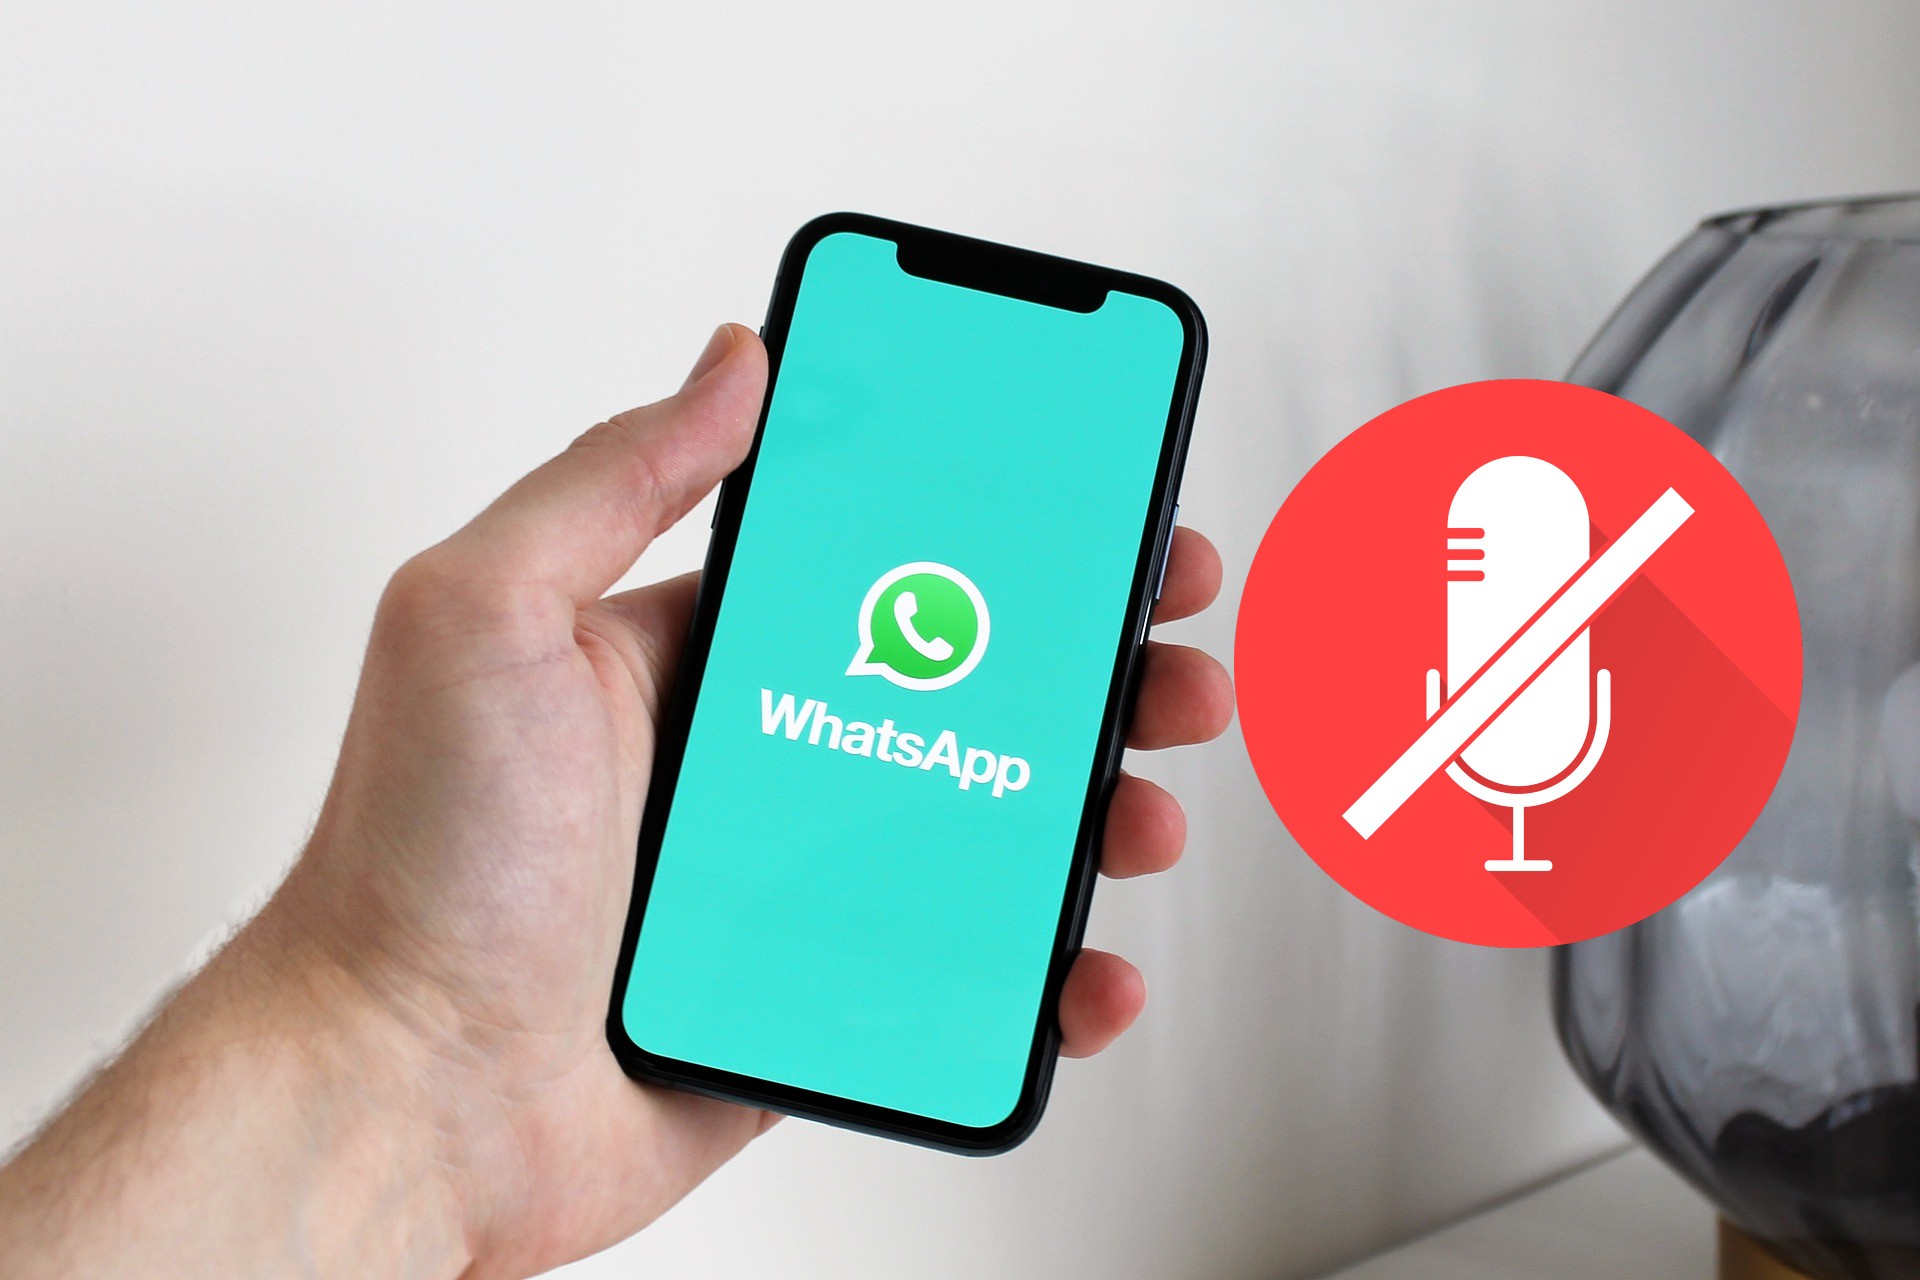 Continuo Y así envío ▷ No me funciona el micrófono en videollamada de WhatsApp